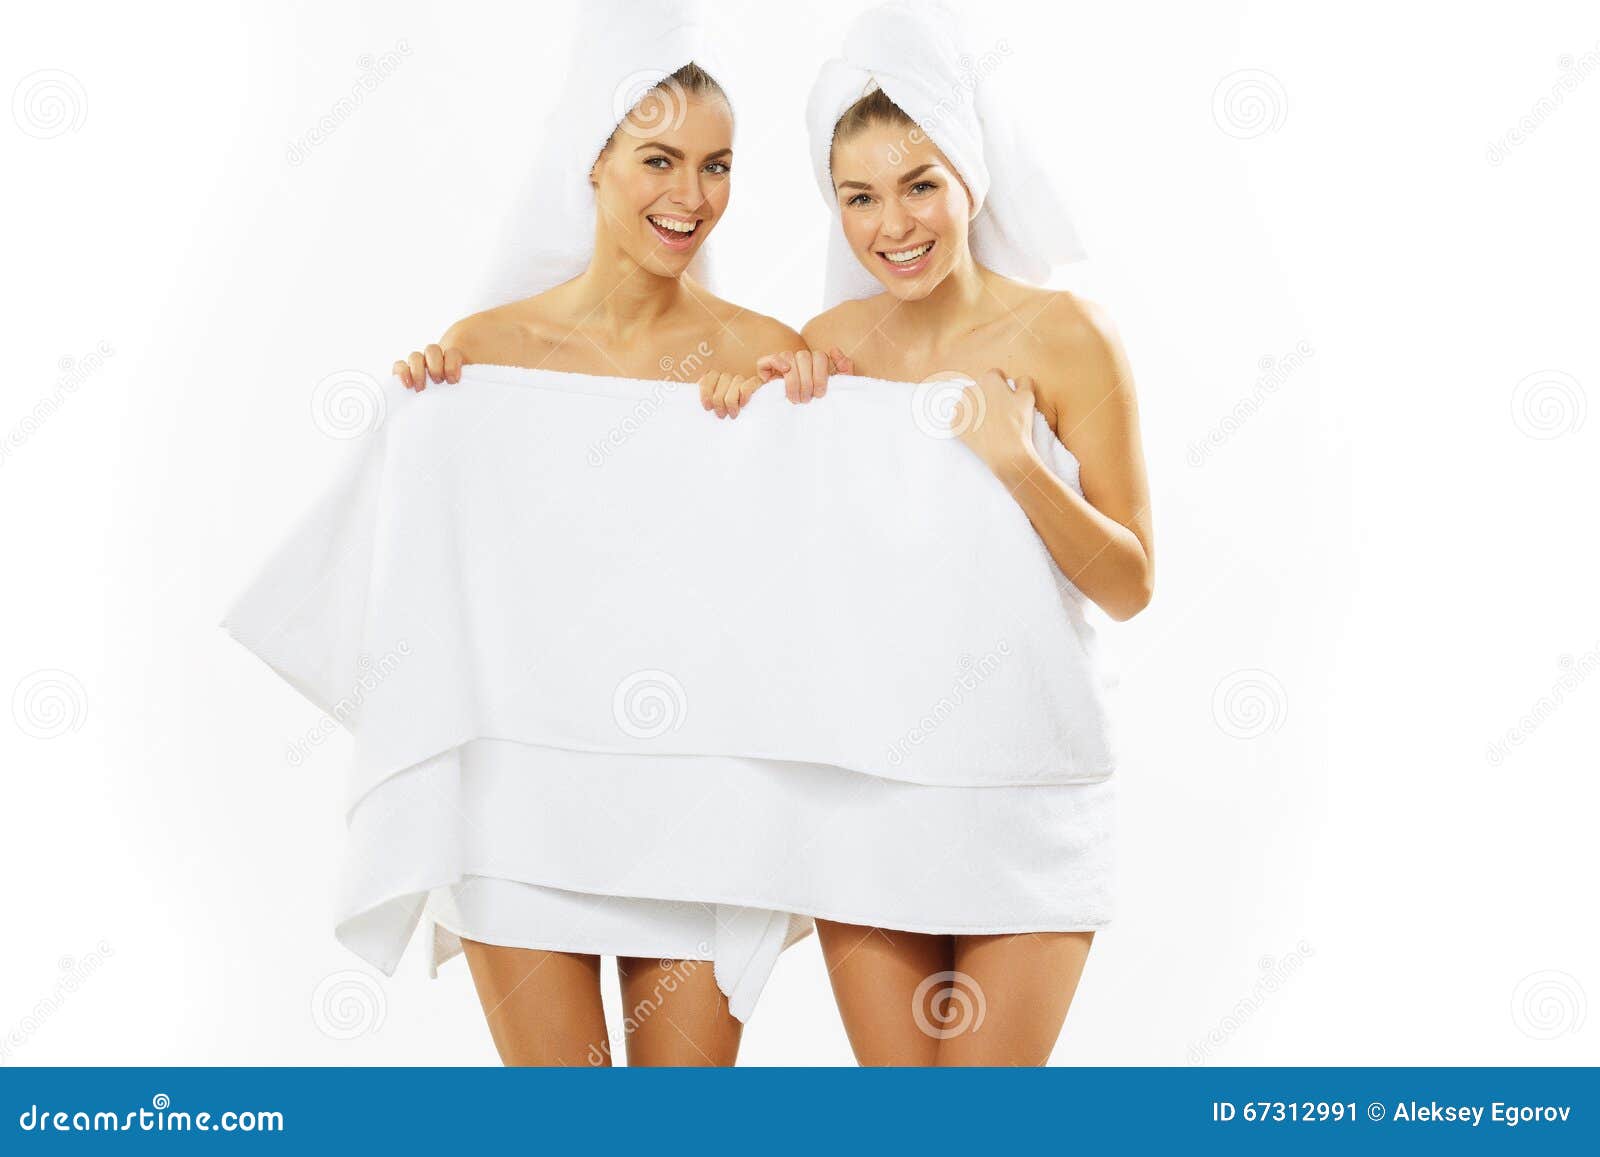 Танцует полотенце. Подружки в полотенцах. Две девушки в полотенцах. Девушка в полотенце. Три девушки в полотенцах.